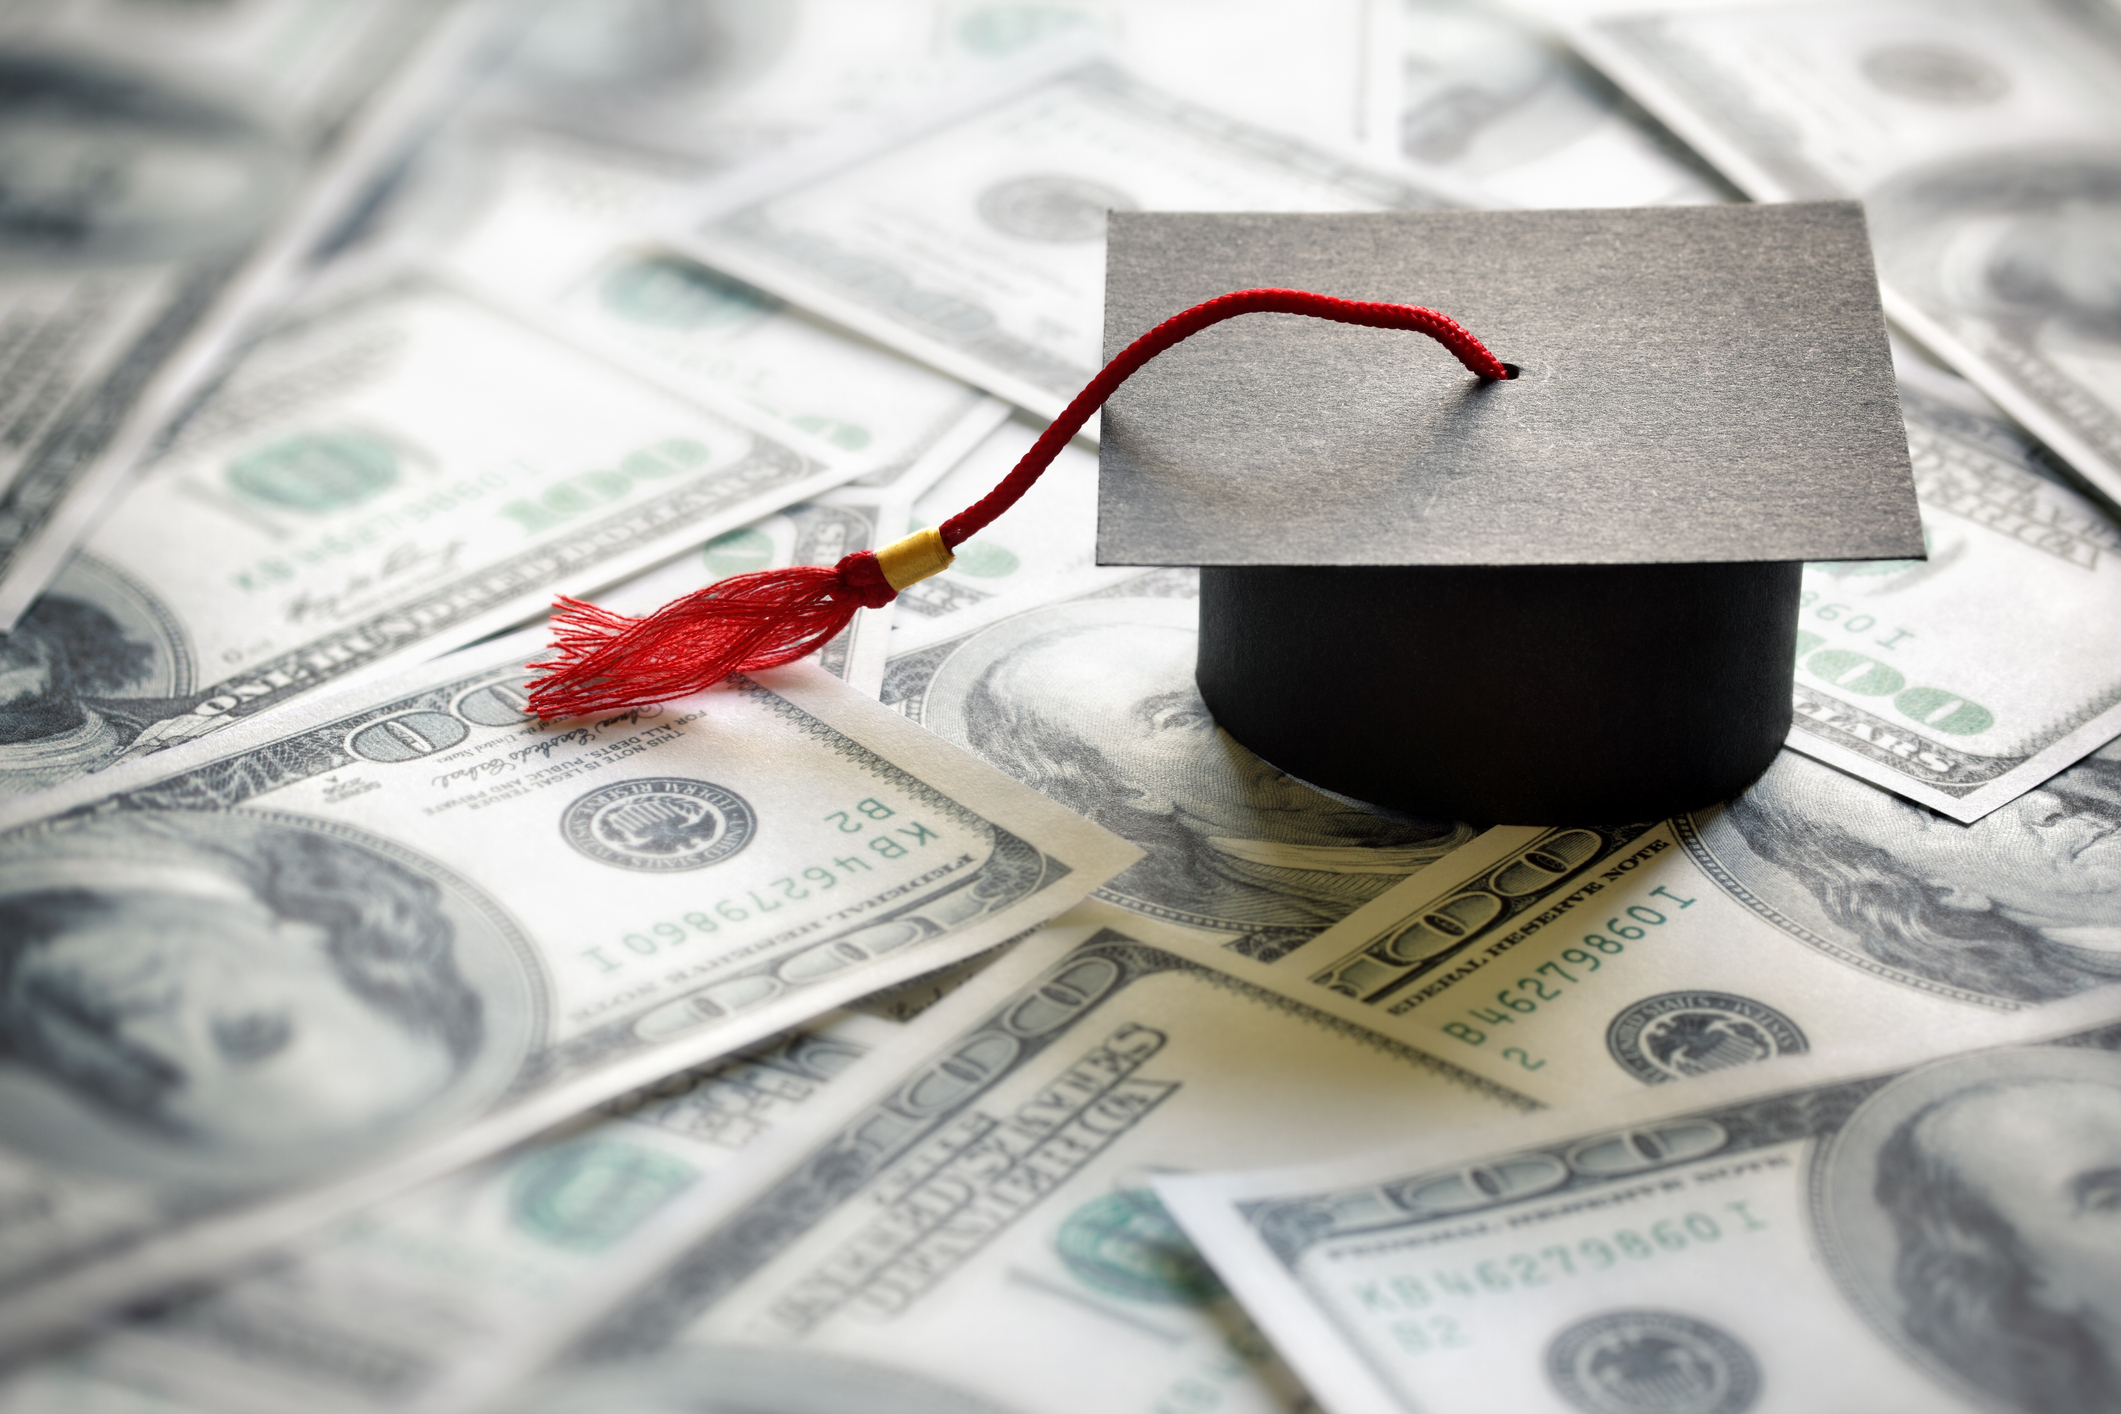 Graduation cap and $100 bills